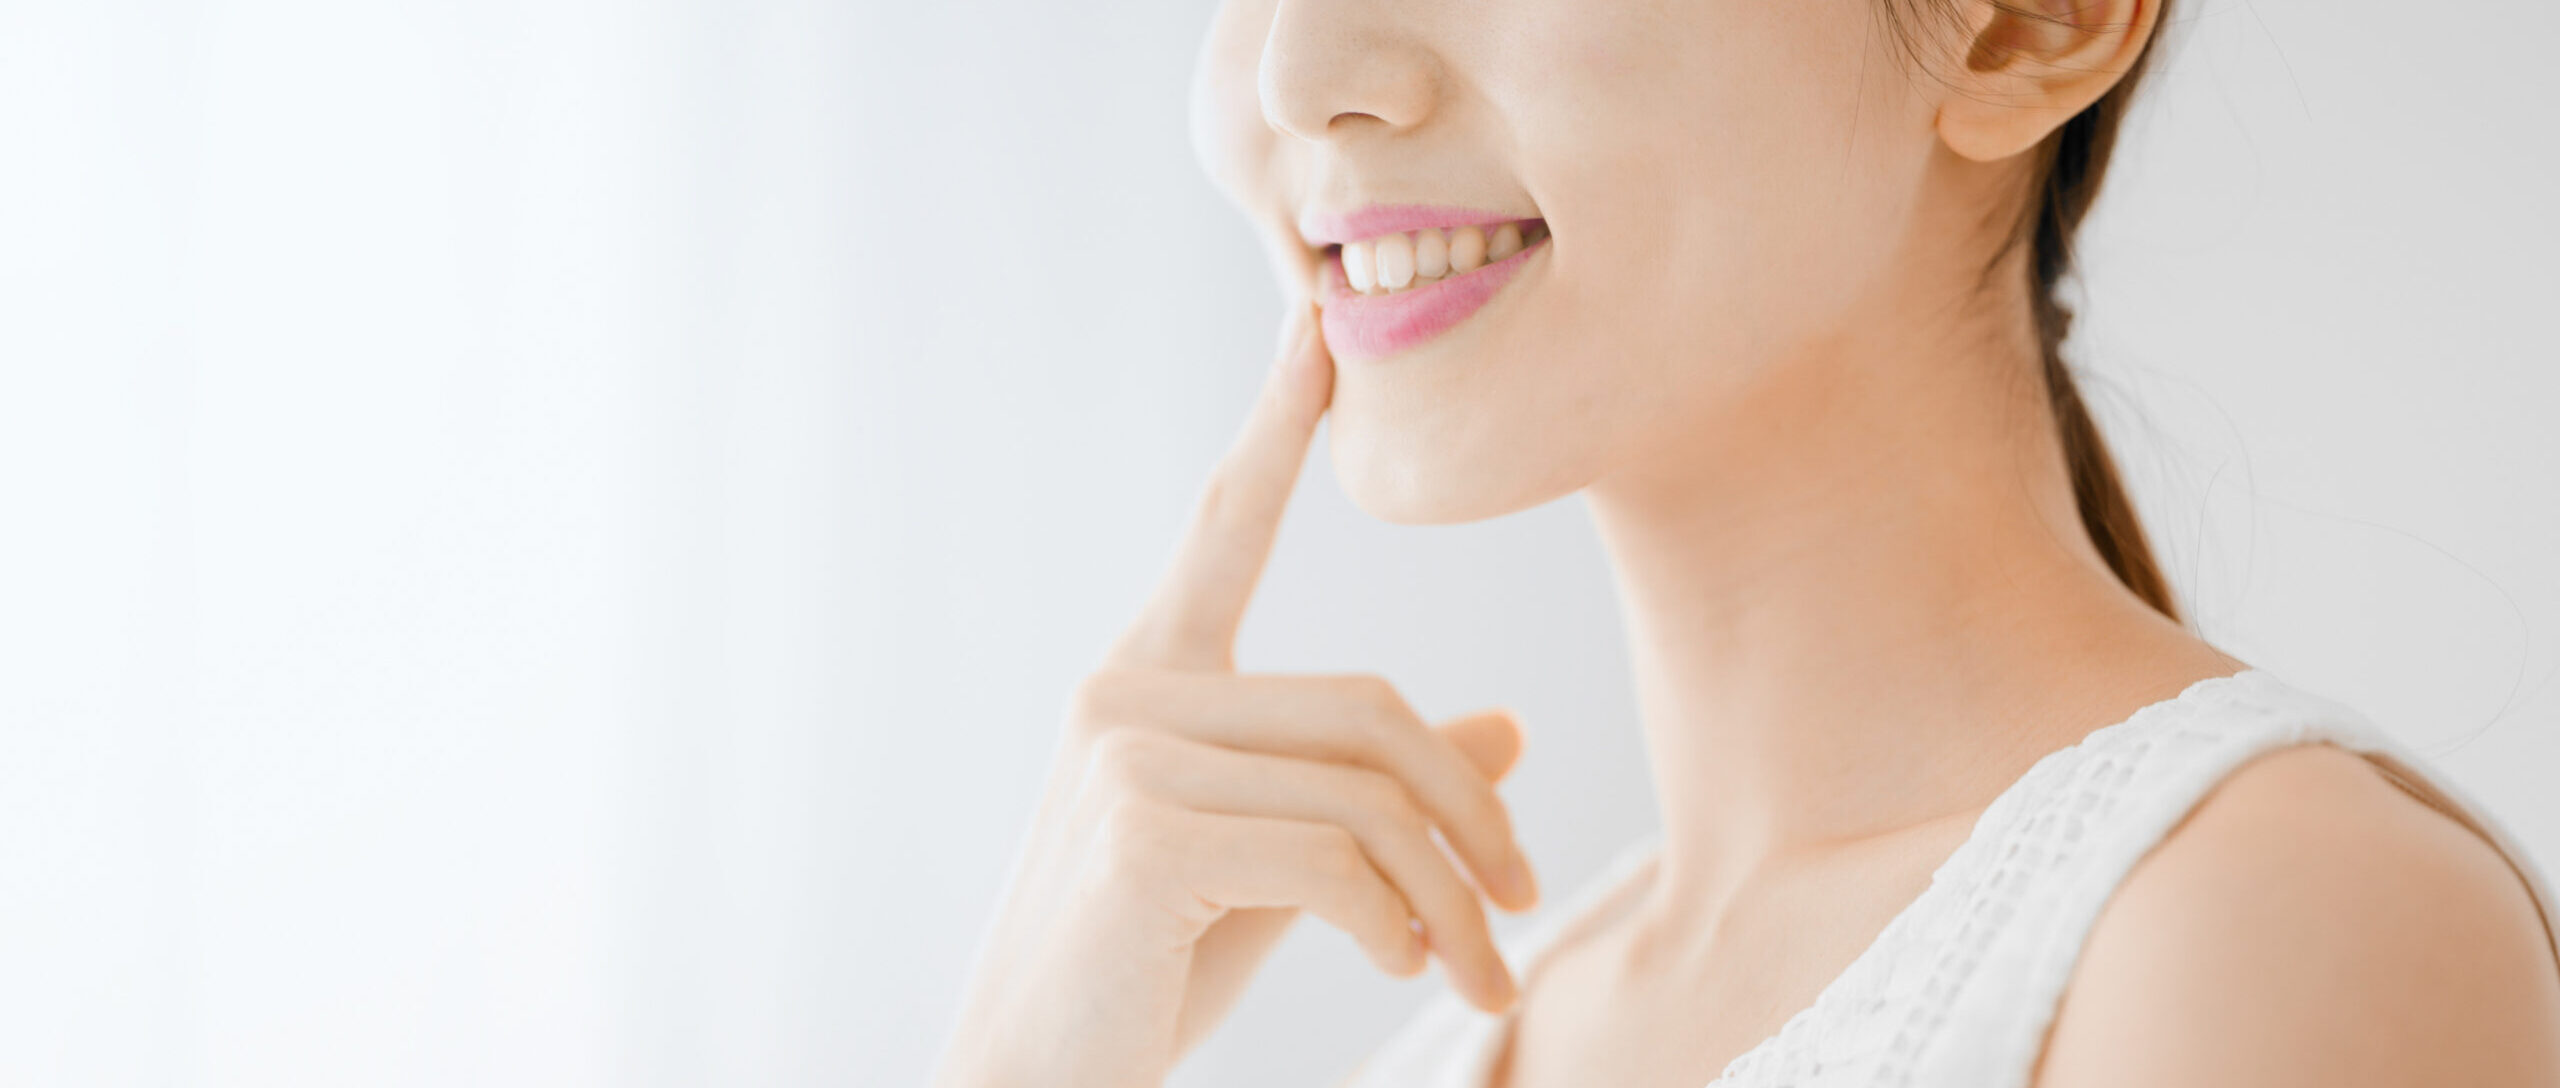 歯に着色しやすい人の特徴と対処法、予防策